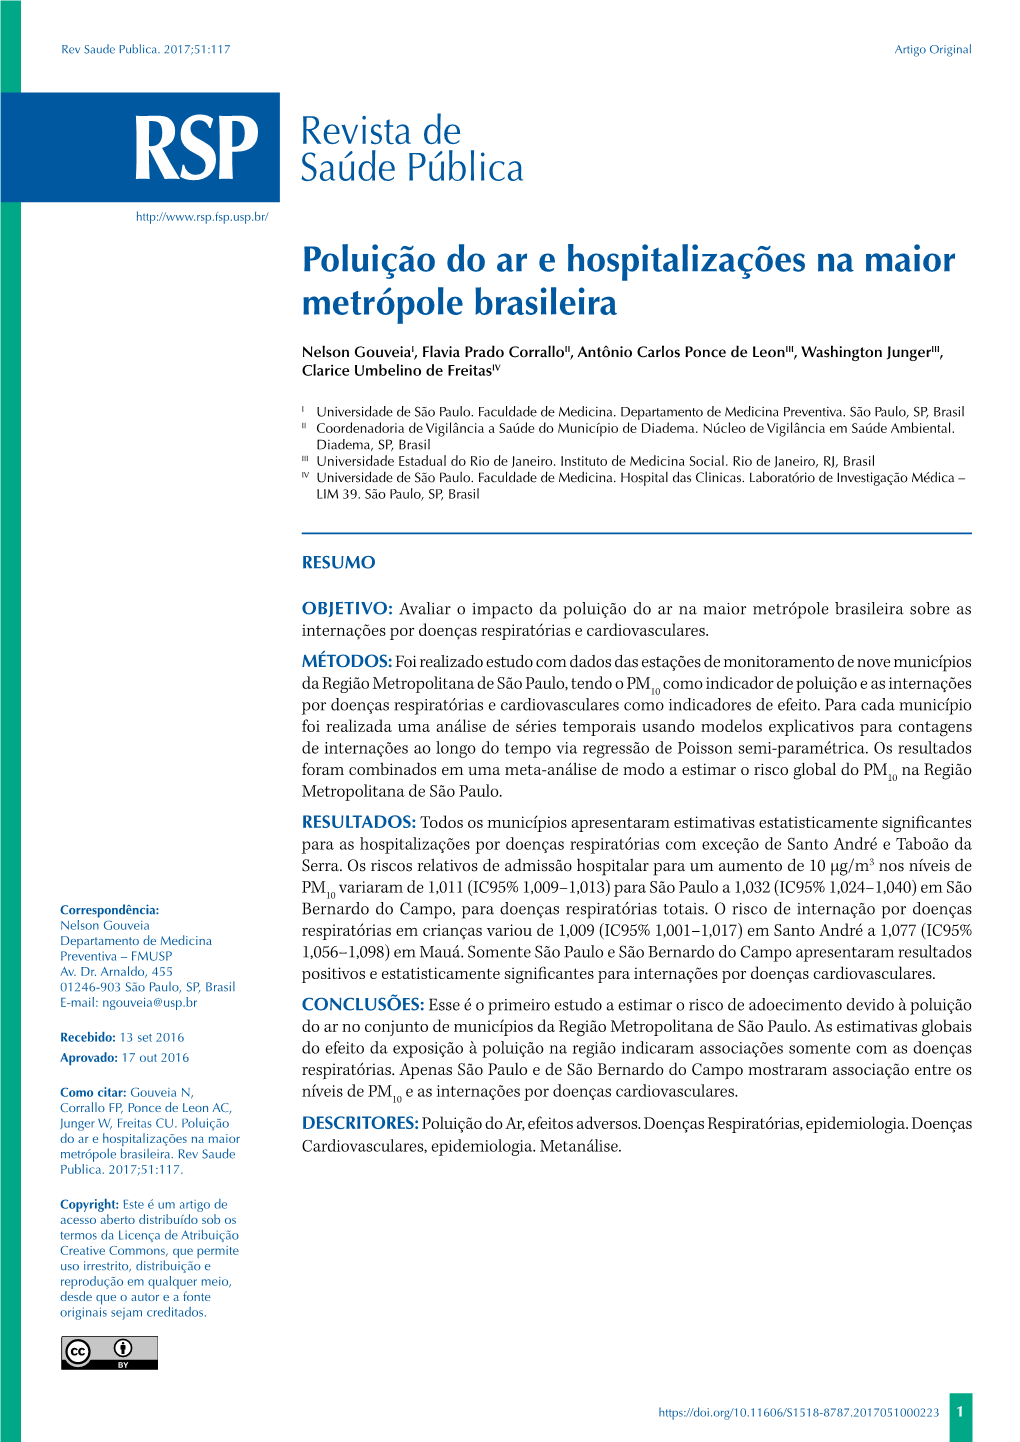 Poluição Do Ar E Hospitalizações Na Maior Metrópole Brasileira